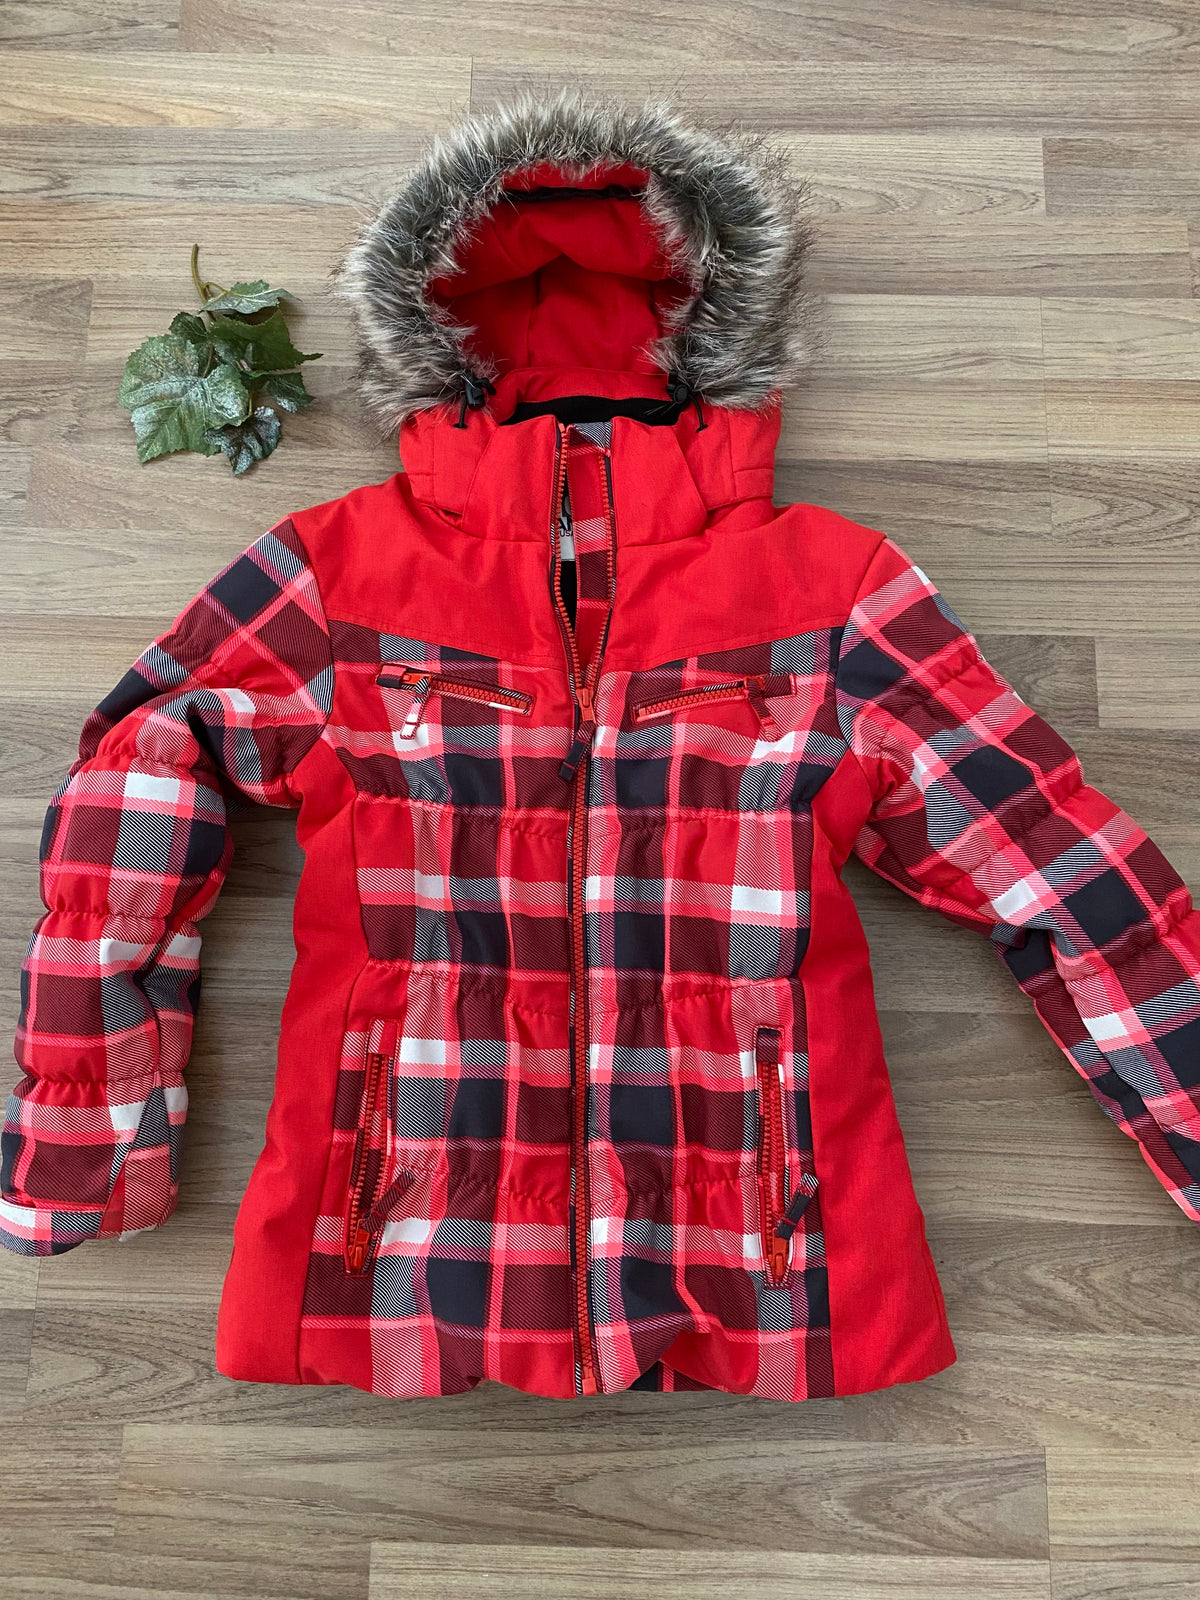 Full Zip Hooded Winter Coat (Girls Size 10)